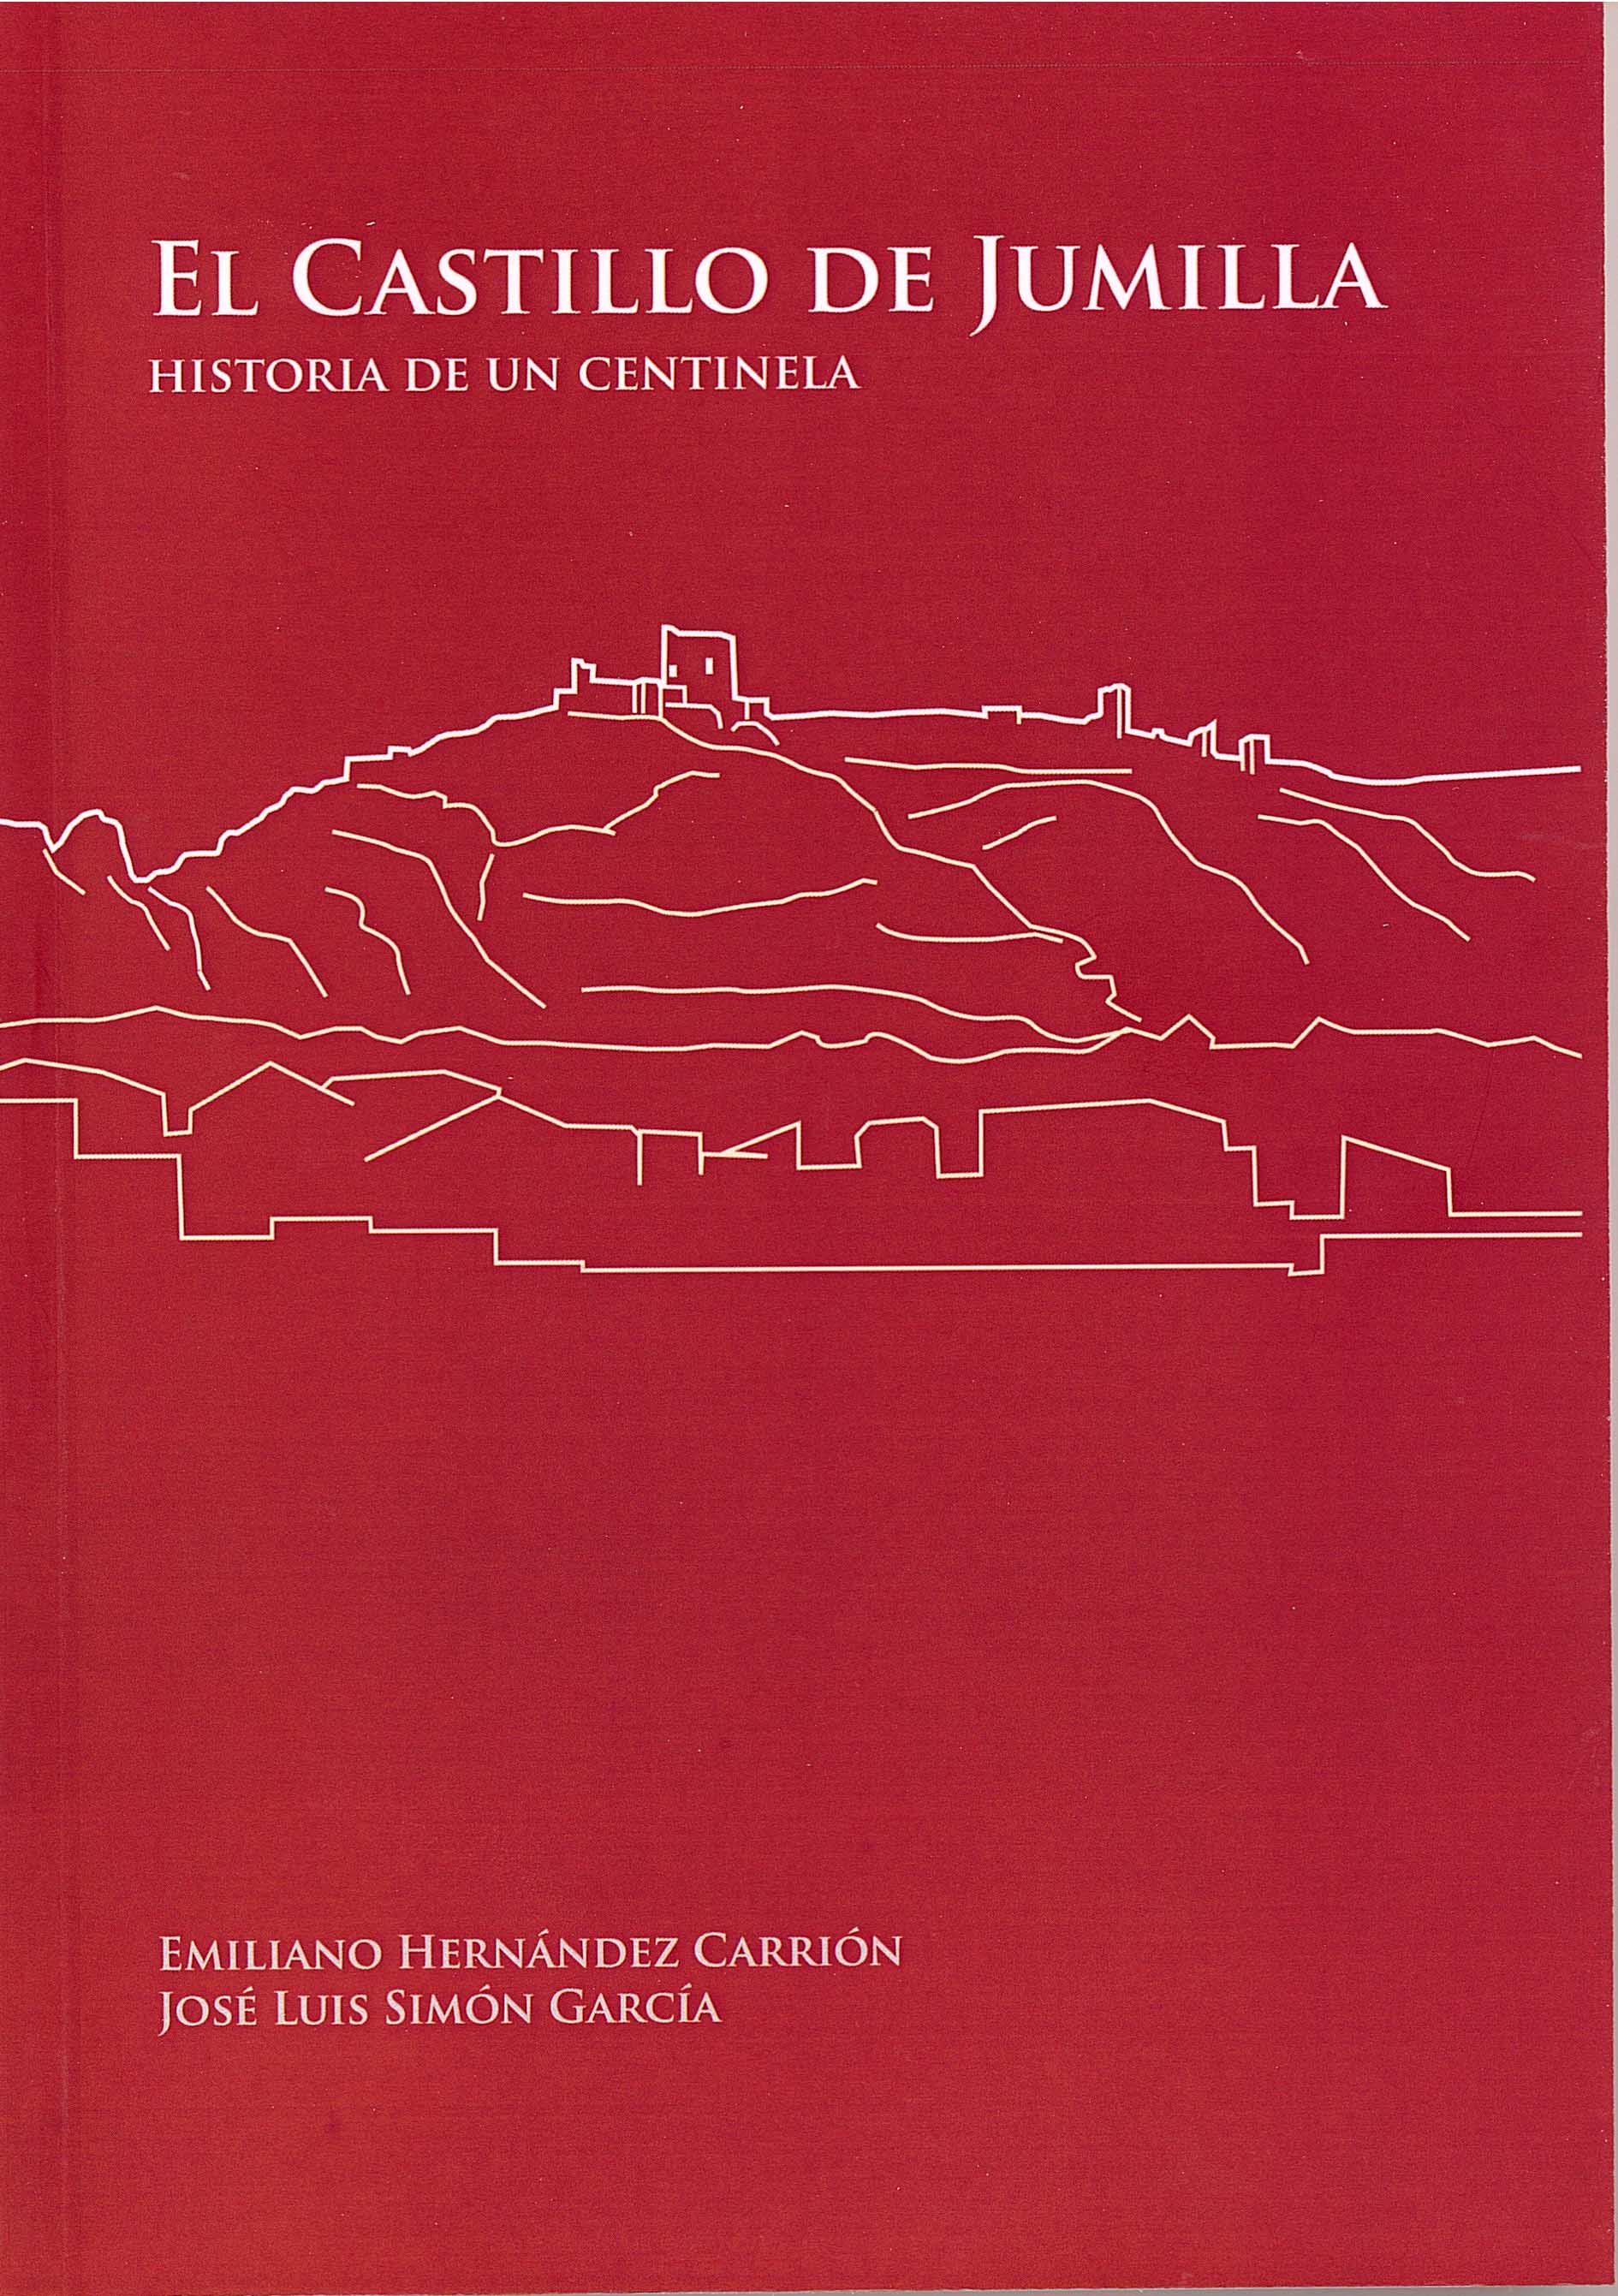 Mañana jueves se presenta un libro sobre el Castillo de Jumilla